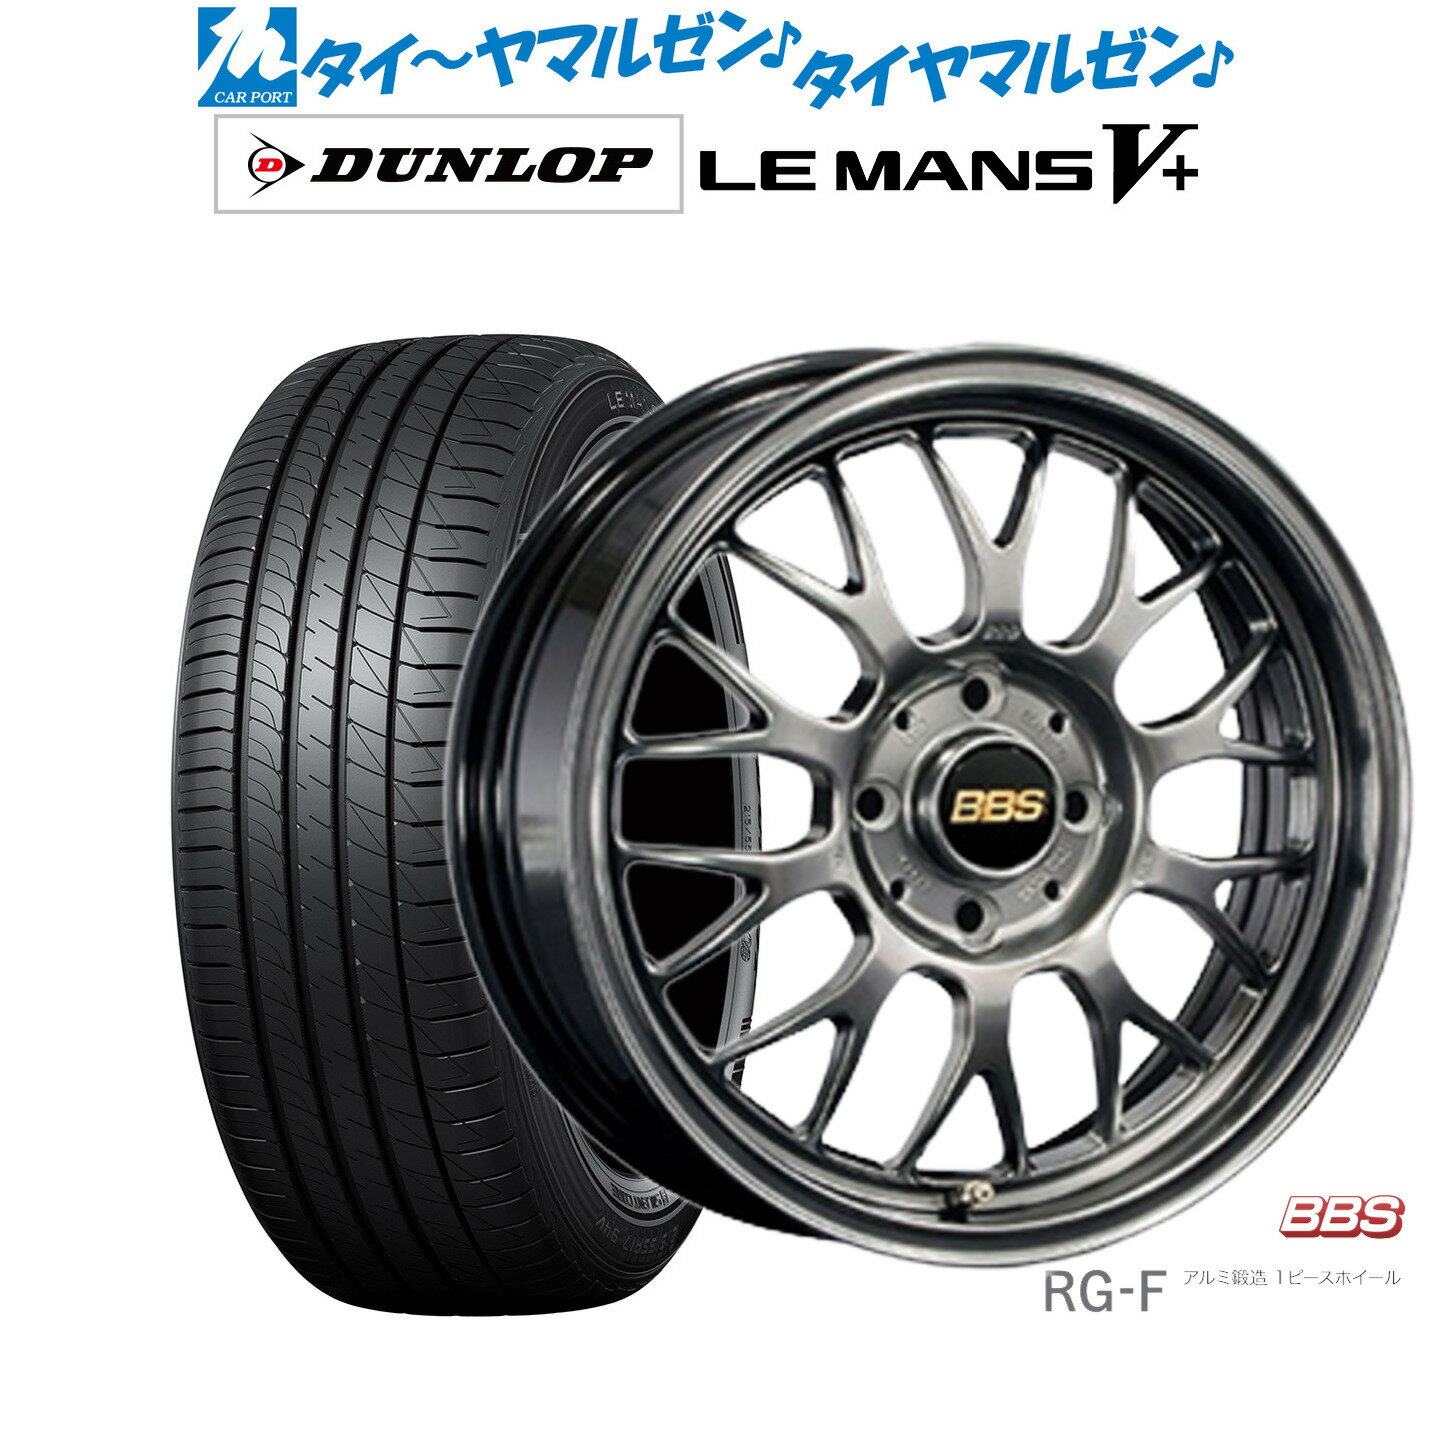 [5/18]ストアポイント3倍!!新品 サマータイヤ ホイール4本セットBBS JAPAN RG-F15インチ 5.5Jダンロップ LEMANS ルマン V+ (ファイブプラス)165/55R15